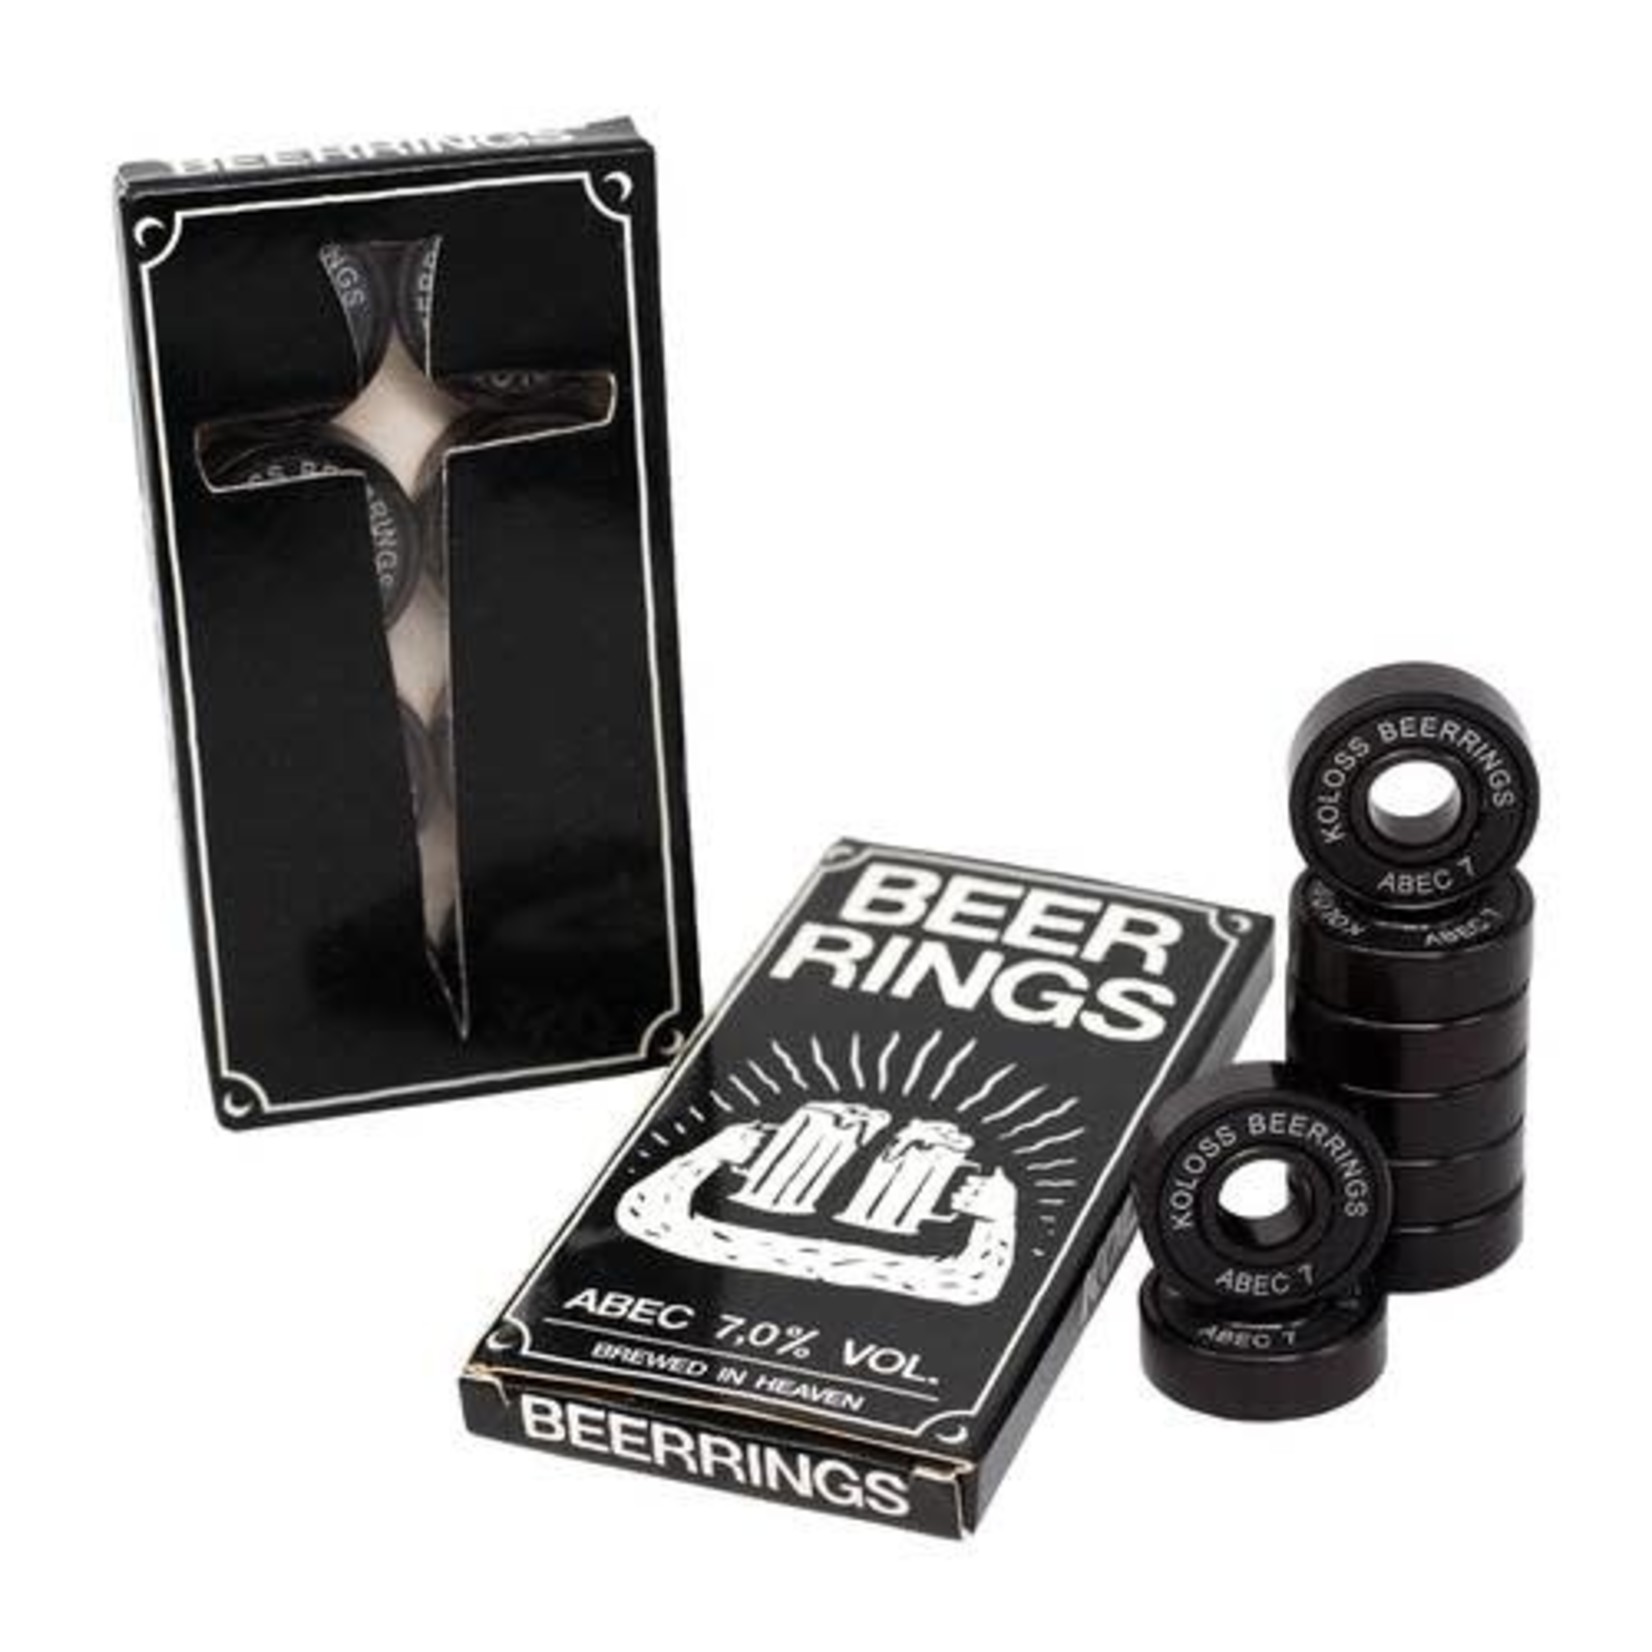 KOLOSS KOLOSS "Beerrings" Black Edition